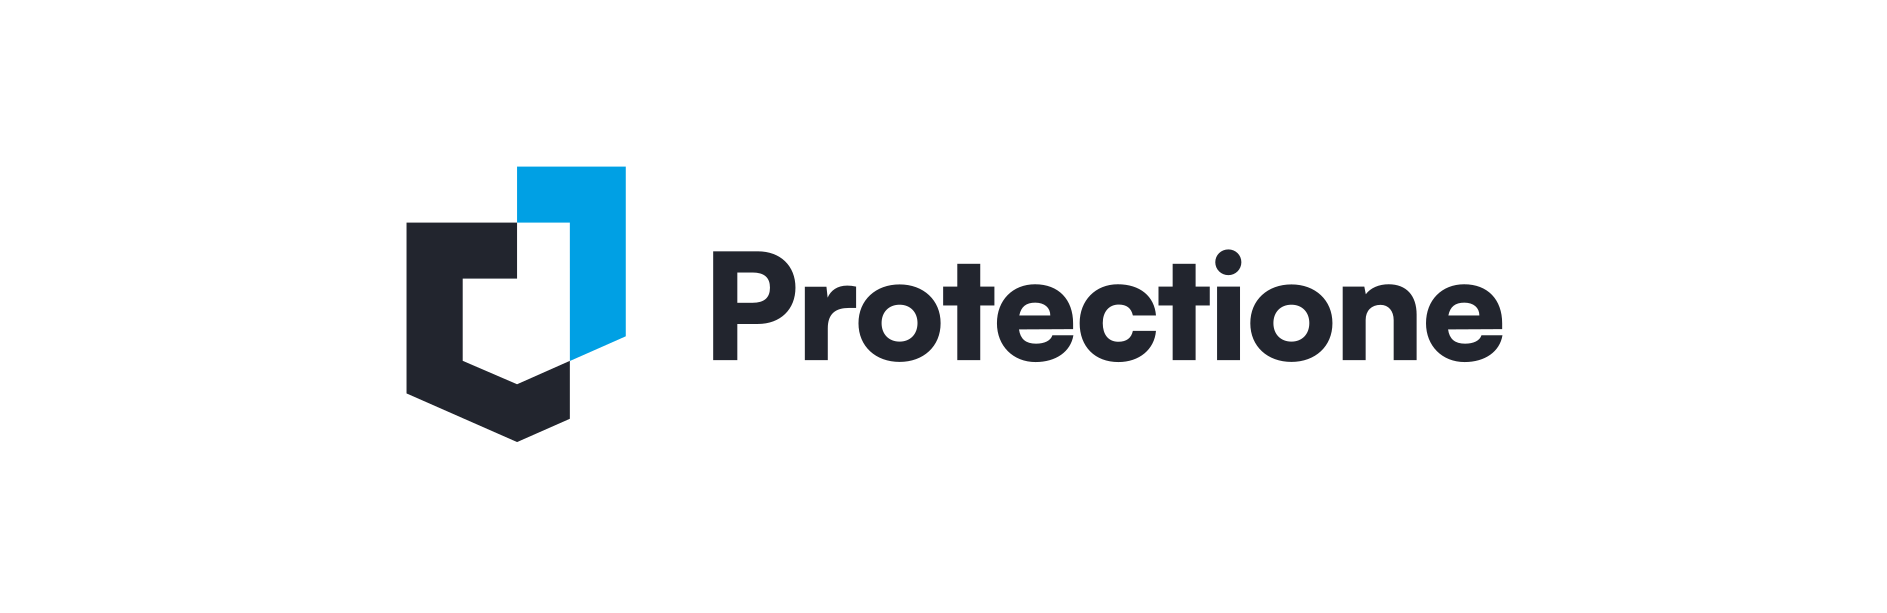 protectione-logo-zdroj_1